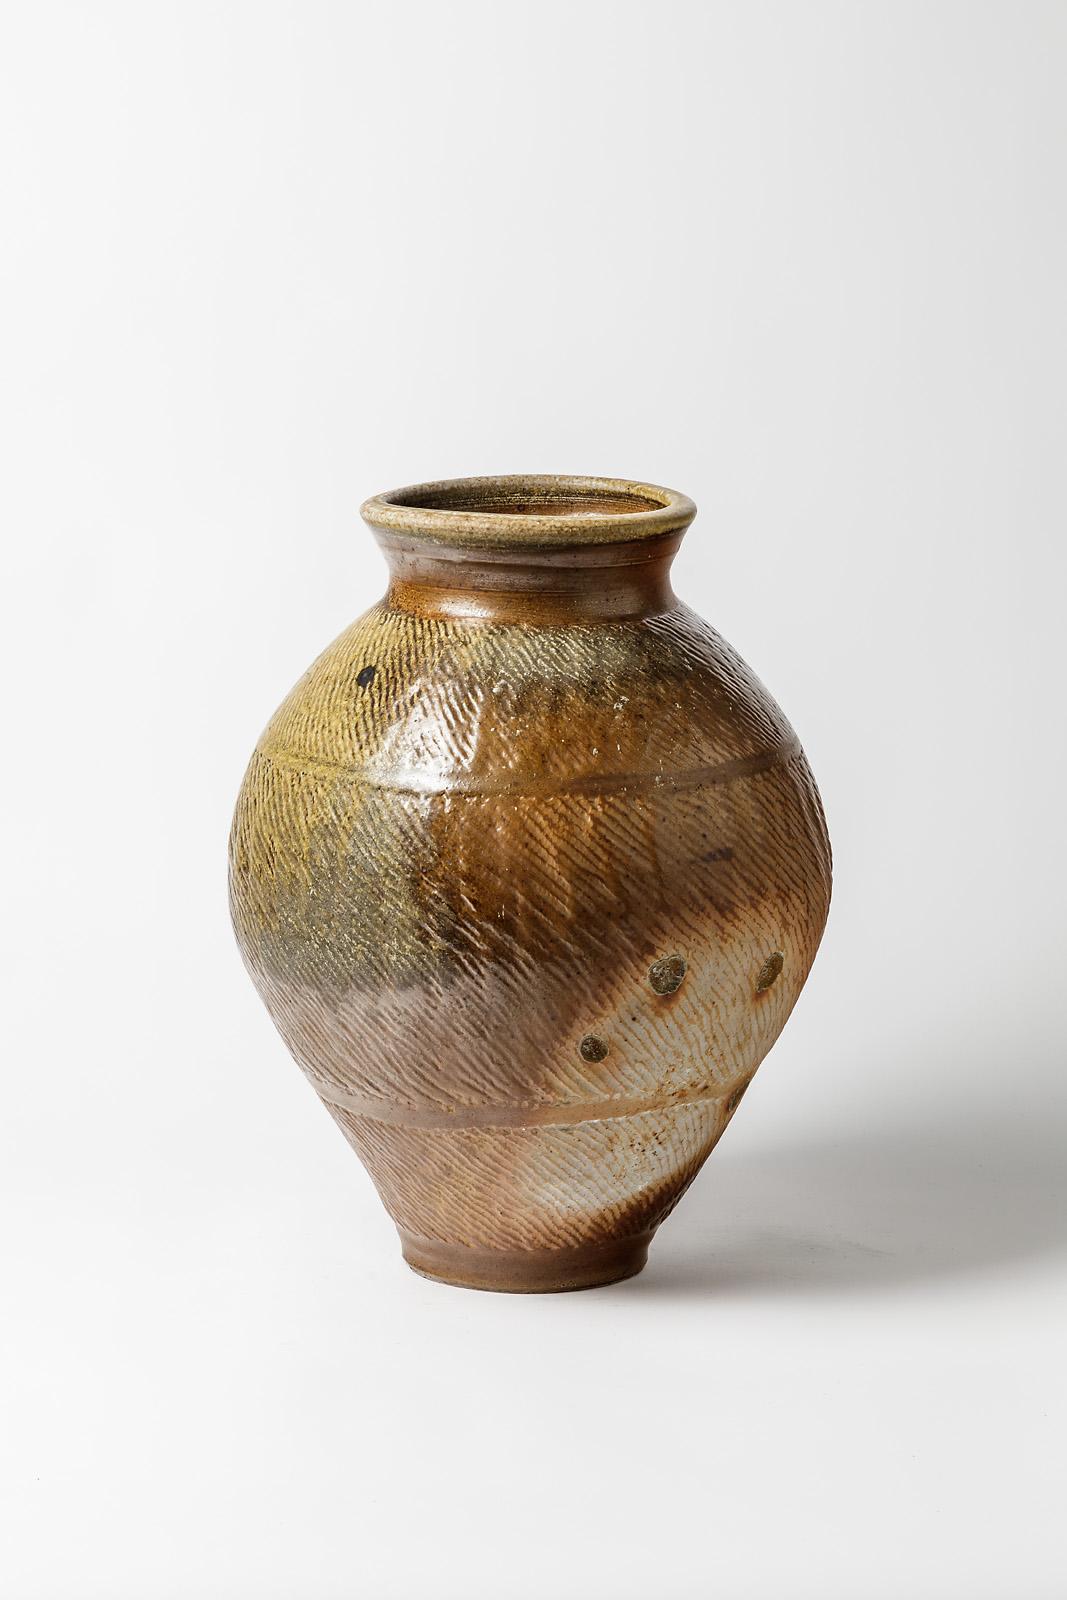 Steens Kepp - La Borne

Réalisé vers 1975-1980

Grand vase de sol en grès brun et blanc.

Signé sous la base

Condition originale parfaite.

Mesures : Hauteur 41 cm
Grandes dimensions 28 cm.
    